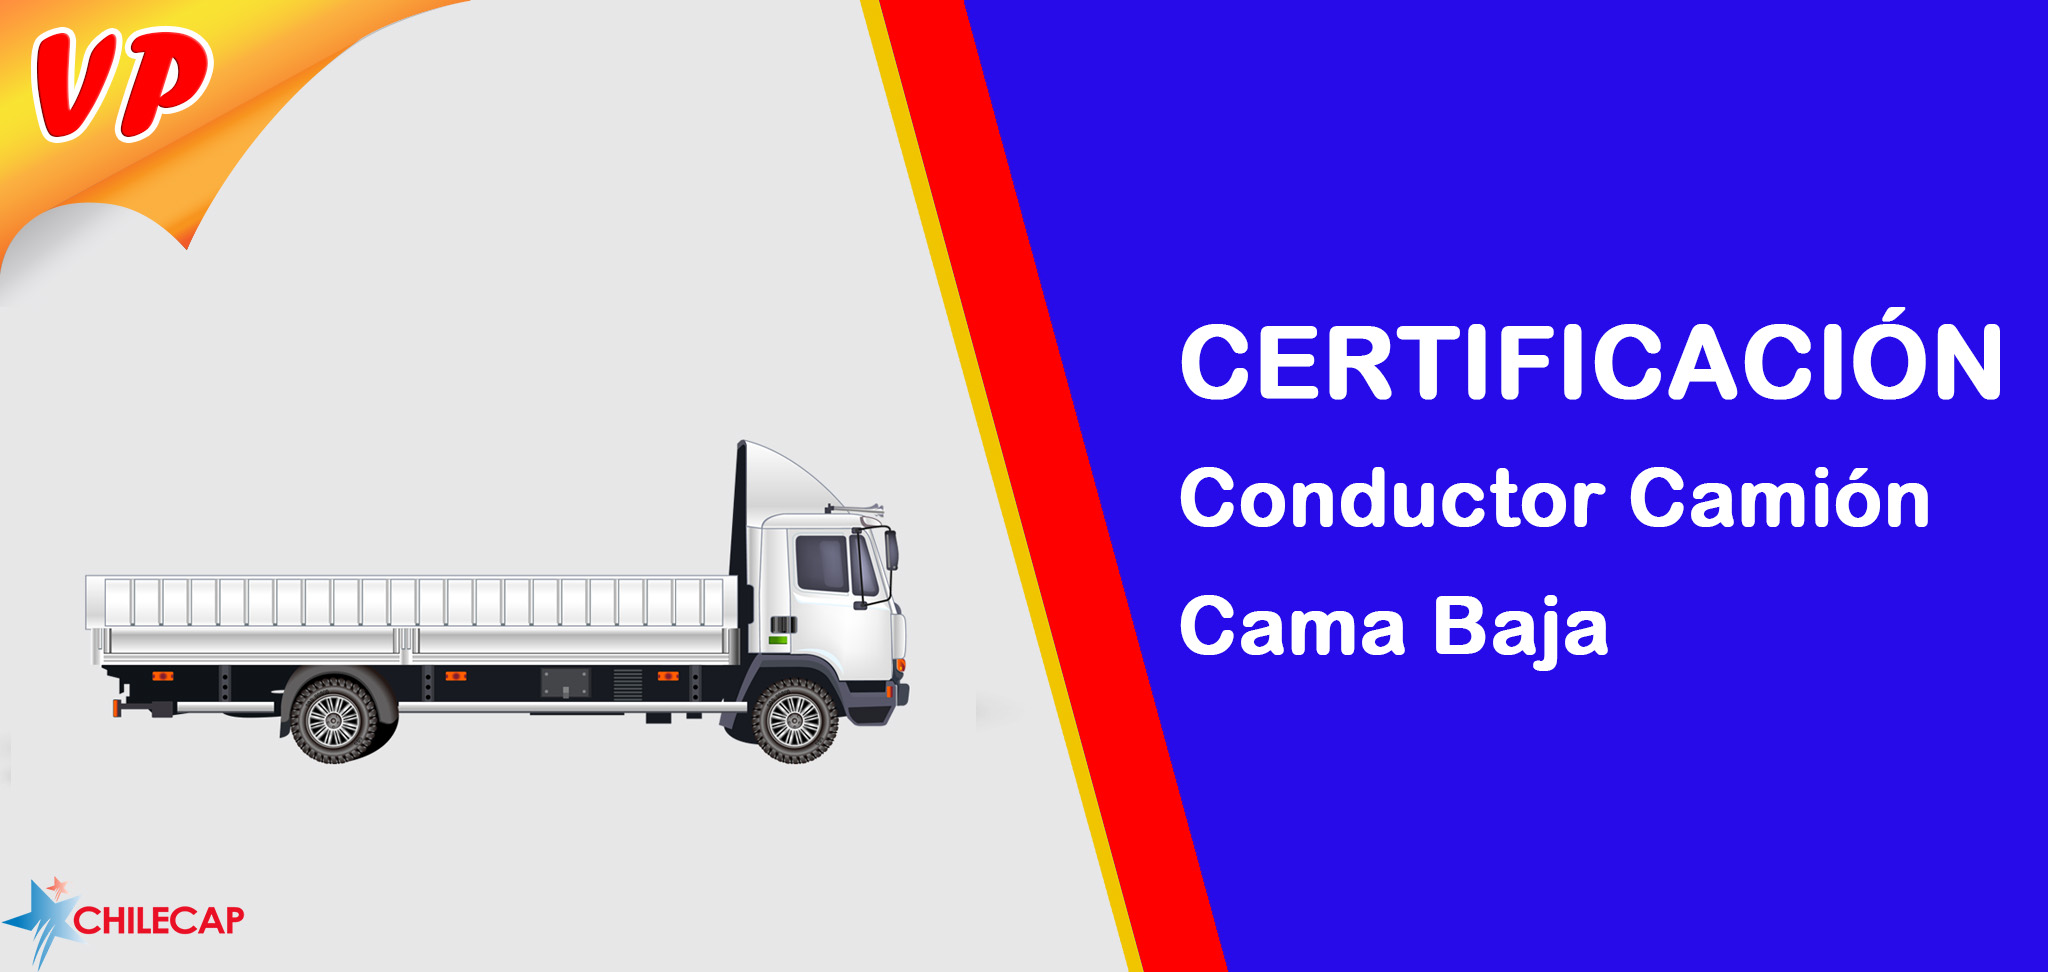 Certificación Conductor Camión Cama Baja VP